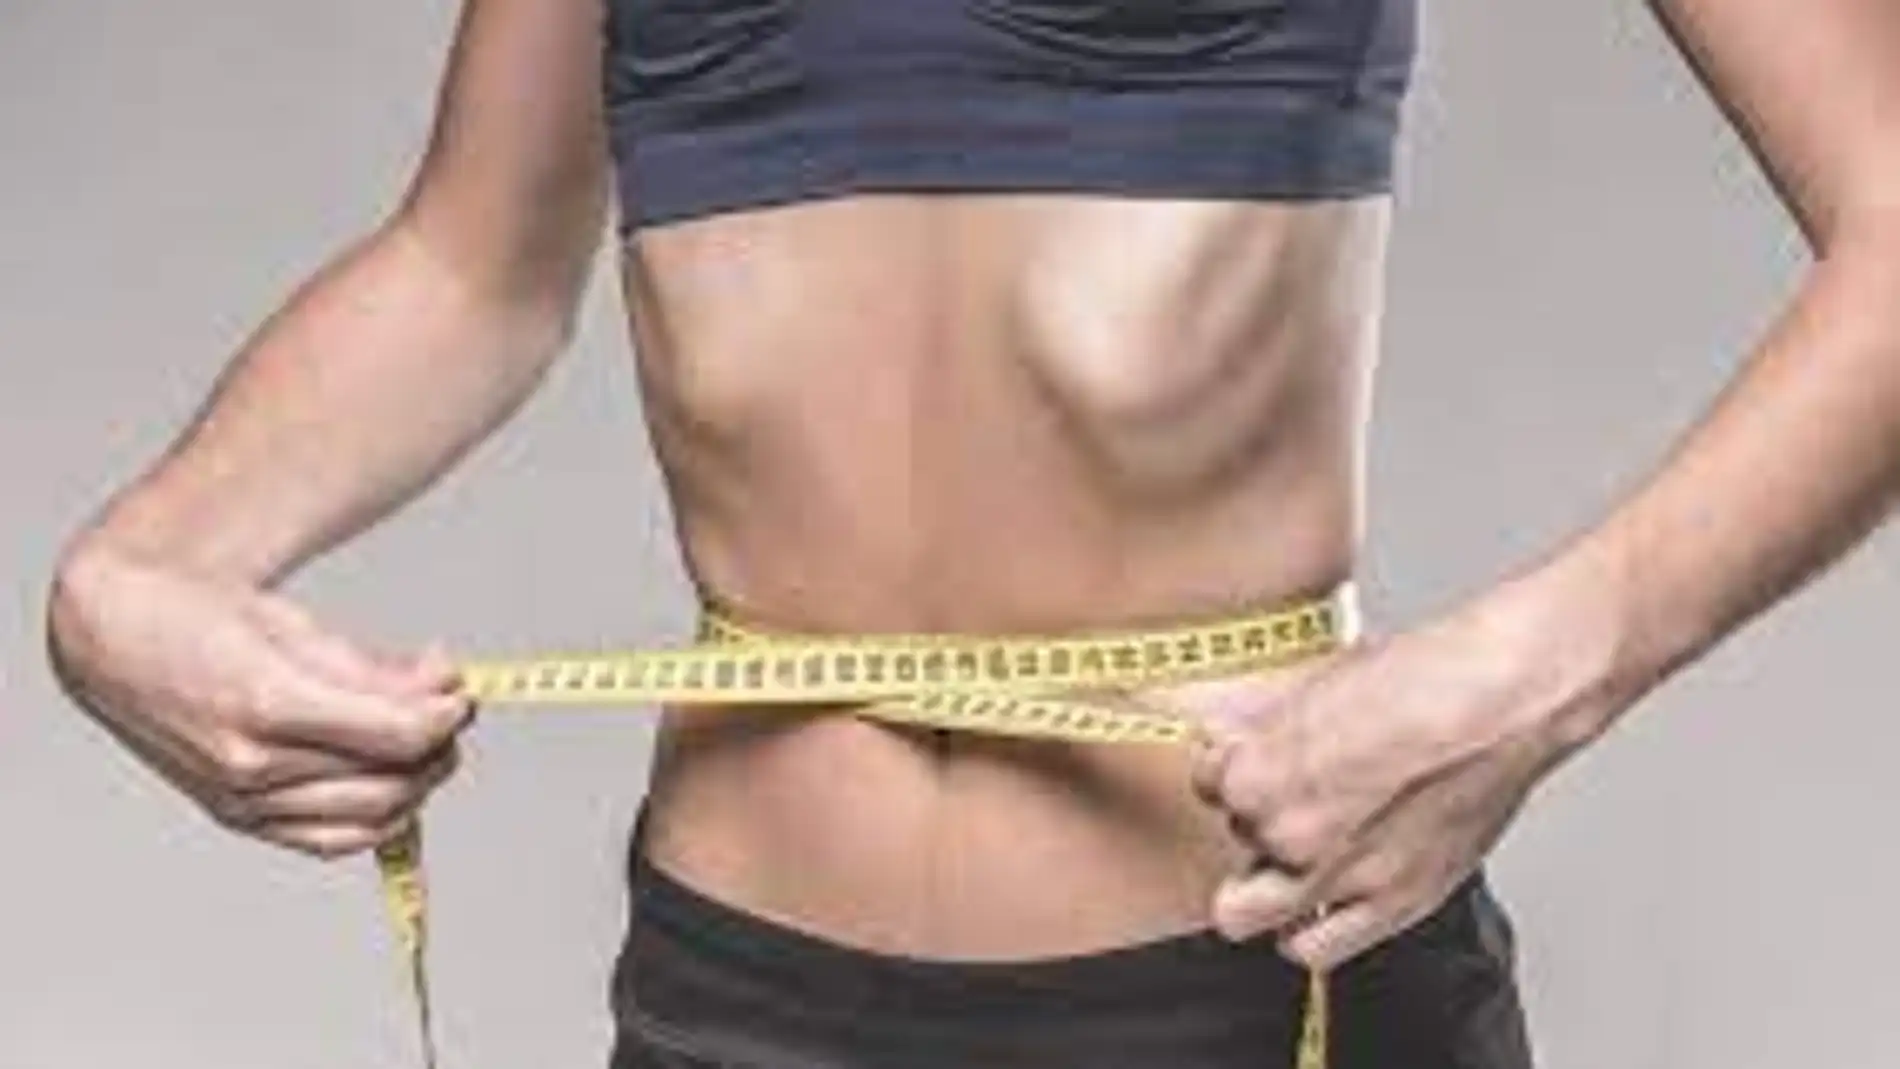 En España padecen enfermedades como bulimia o anorexia unas 400.000 personas, la mayoría jóvenes.